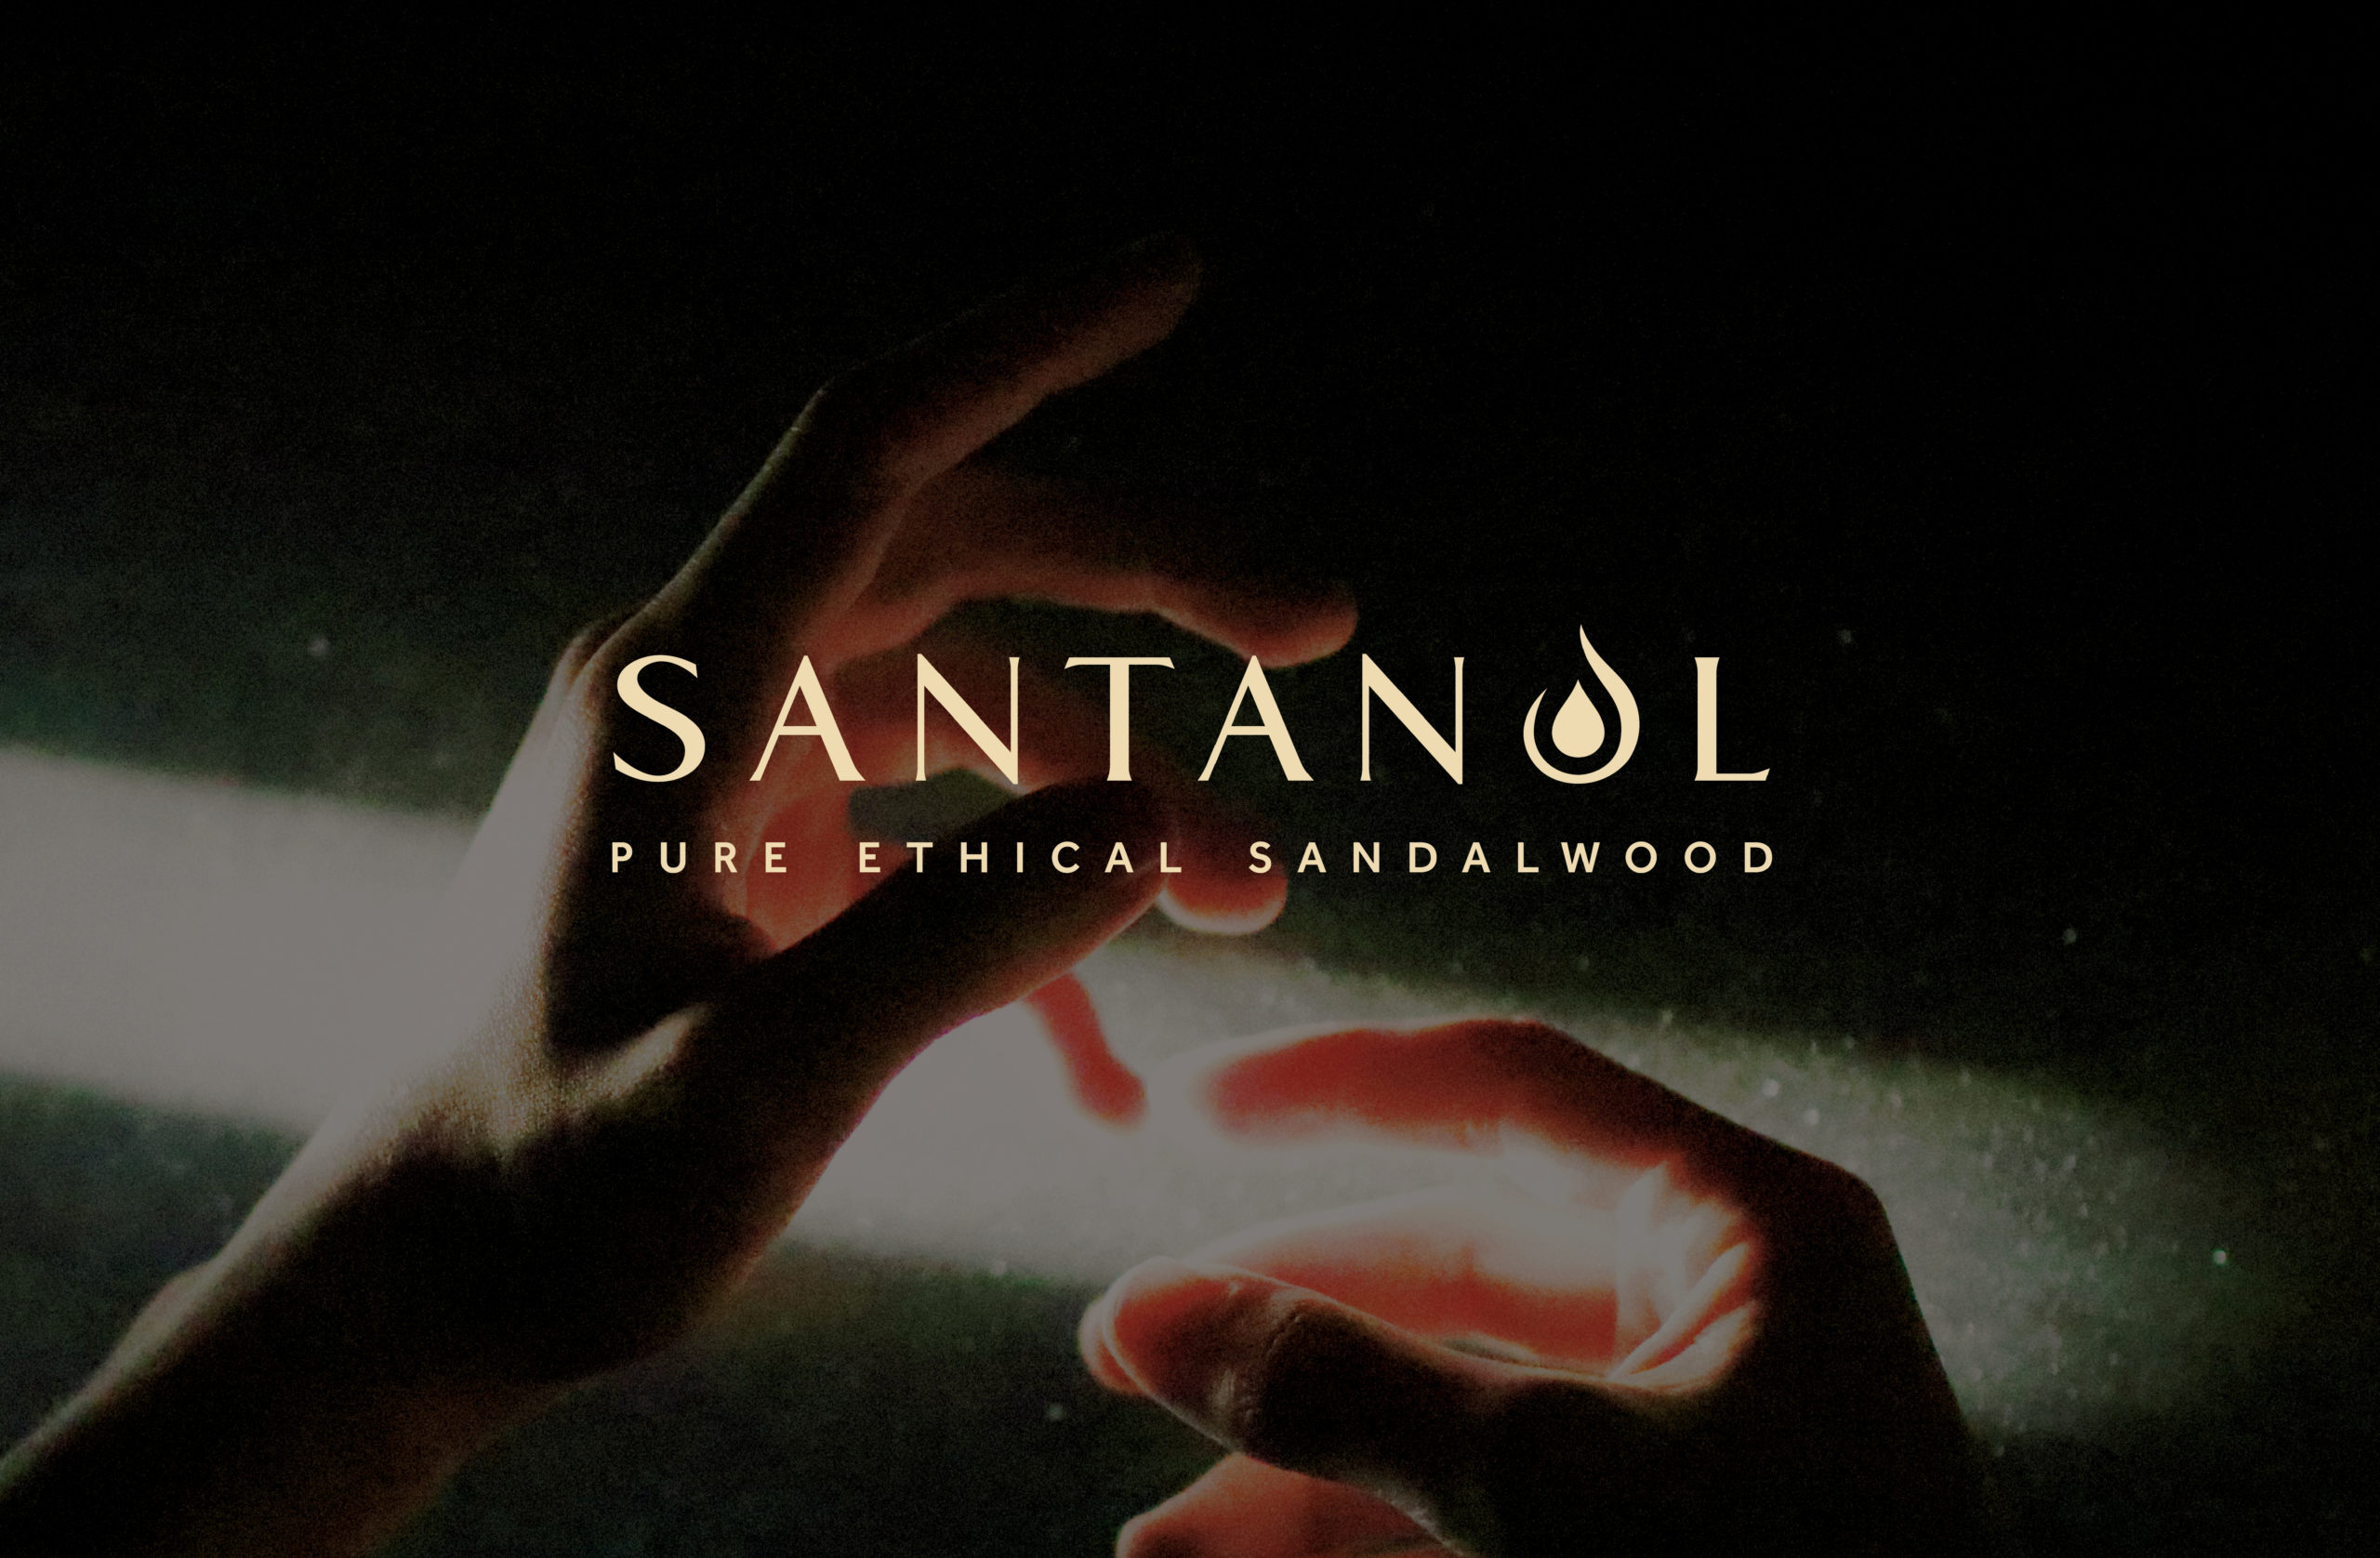 Santanol branding